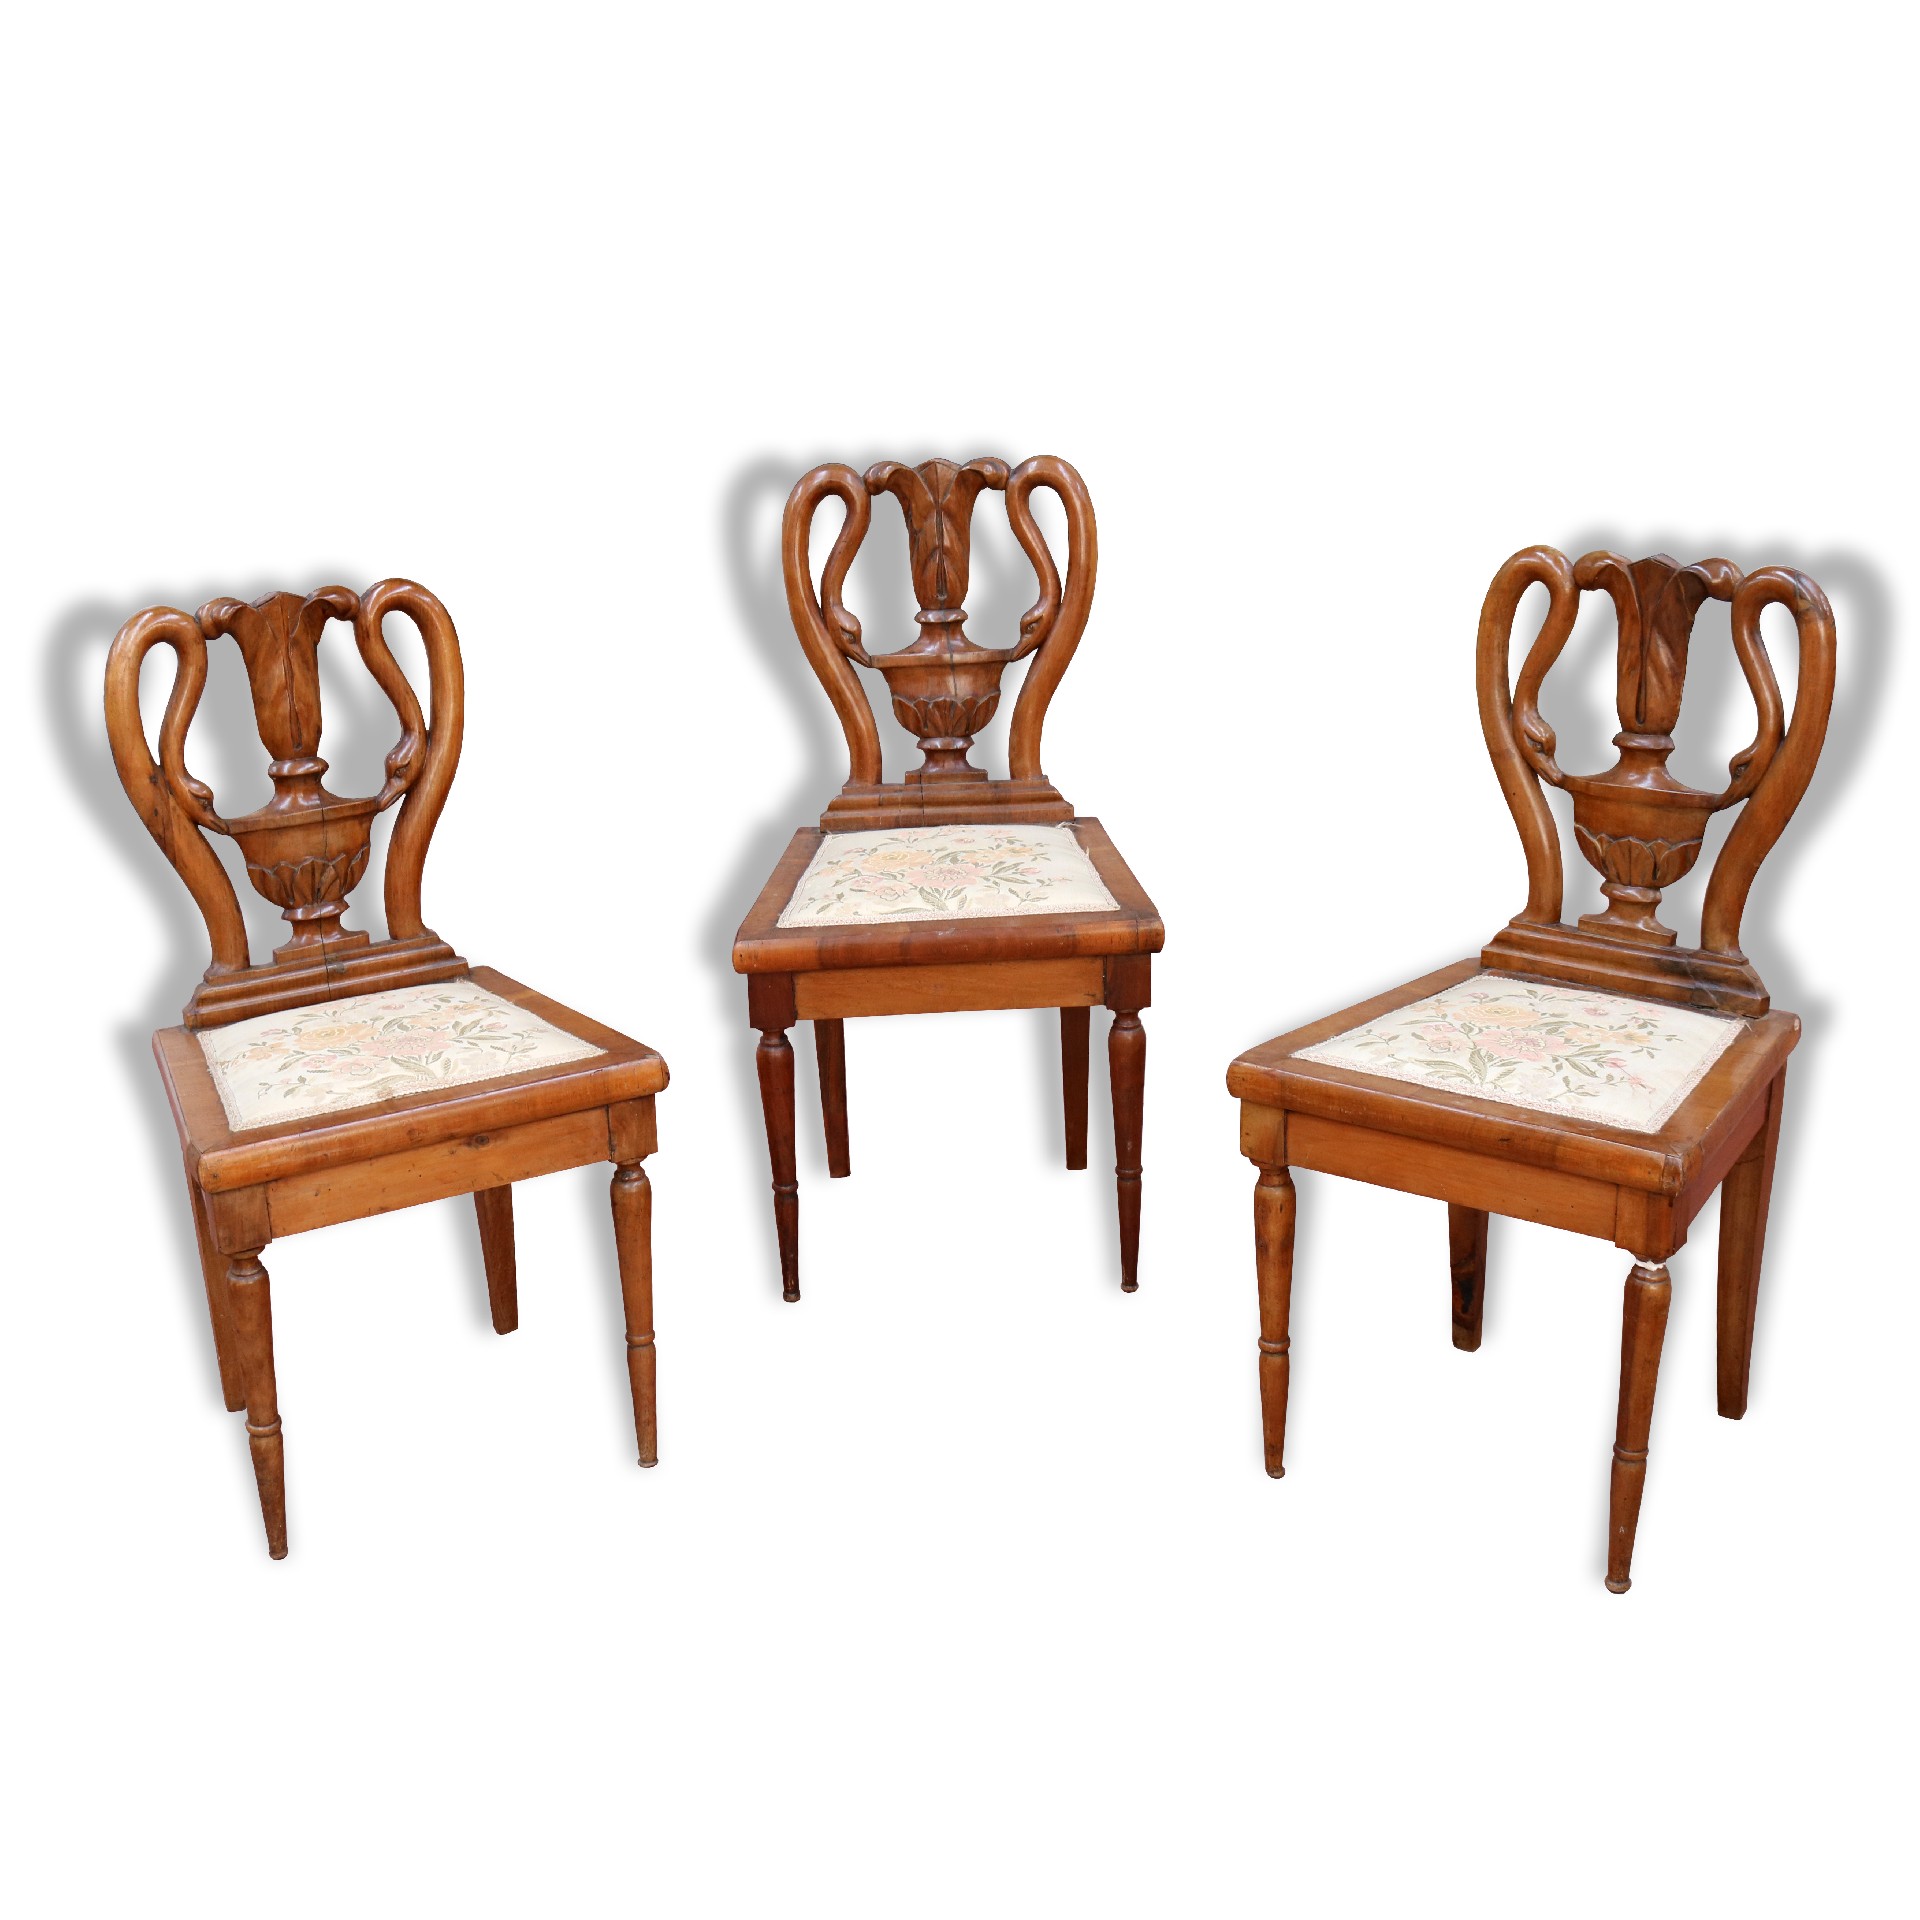 Tre sedie in legno antiche. - 1